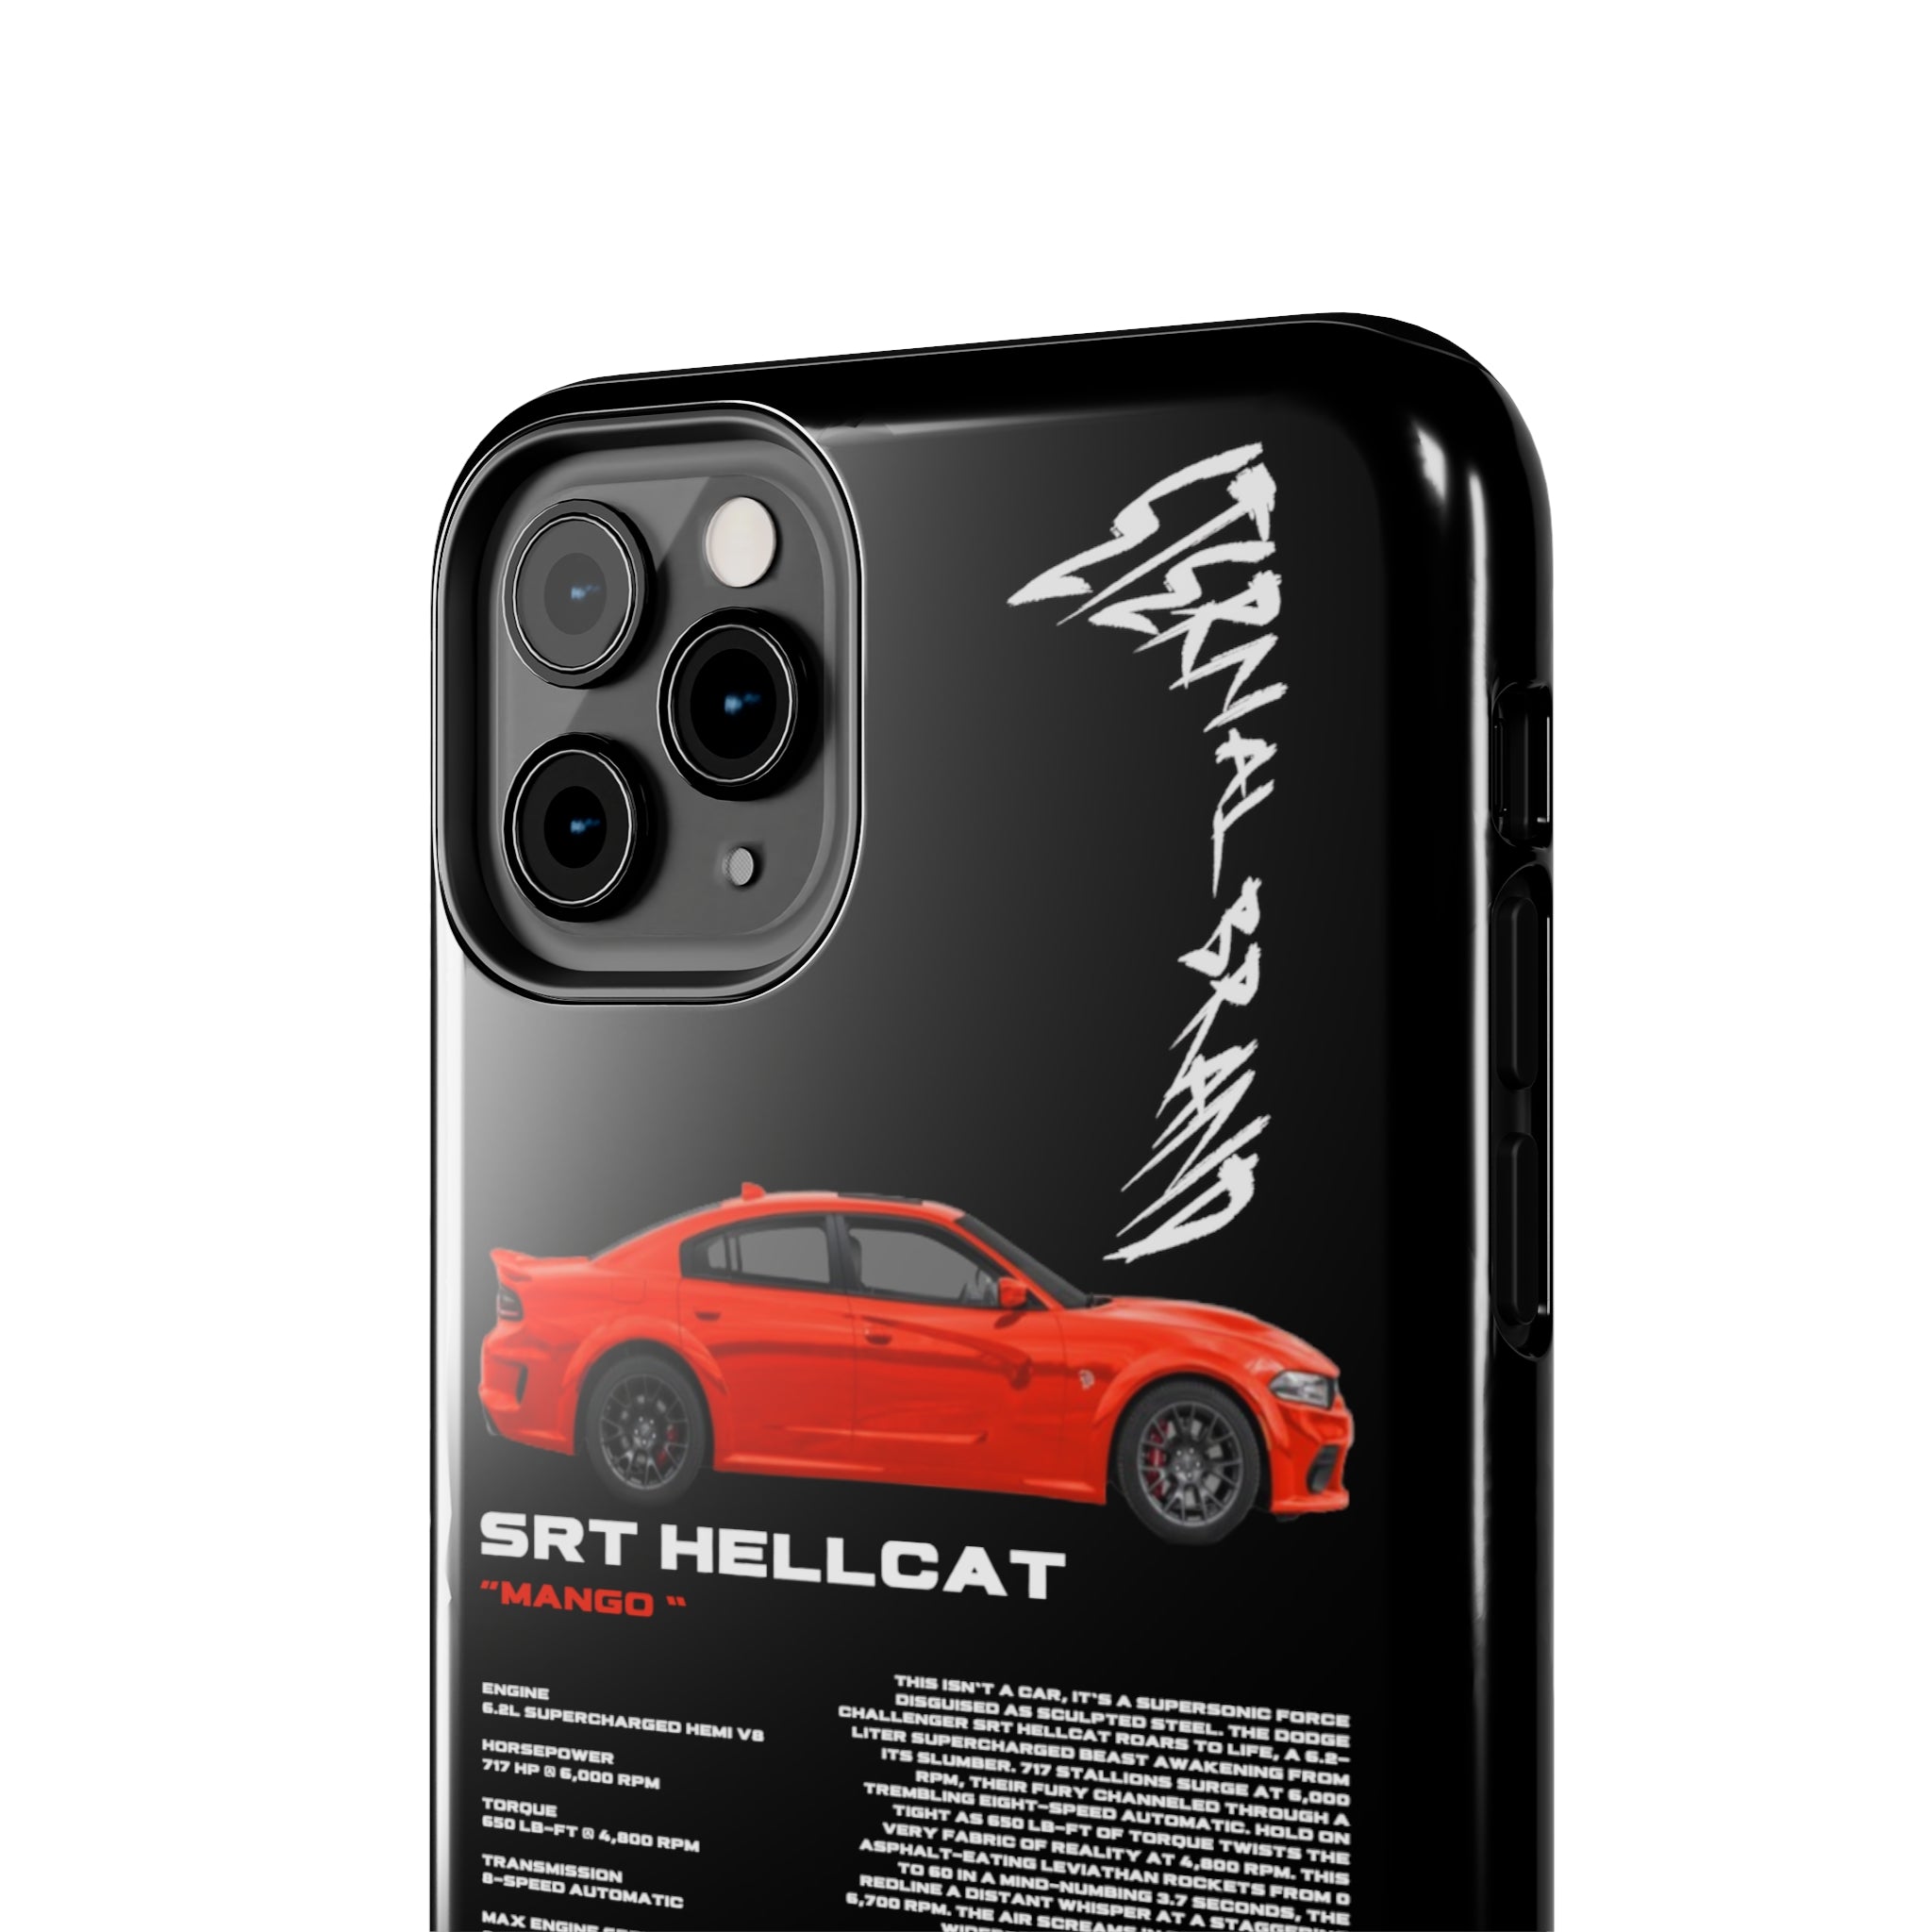 SRT Hellcat "Mango" "Noir"